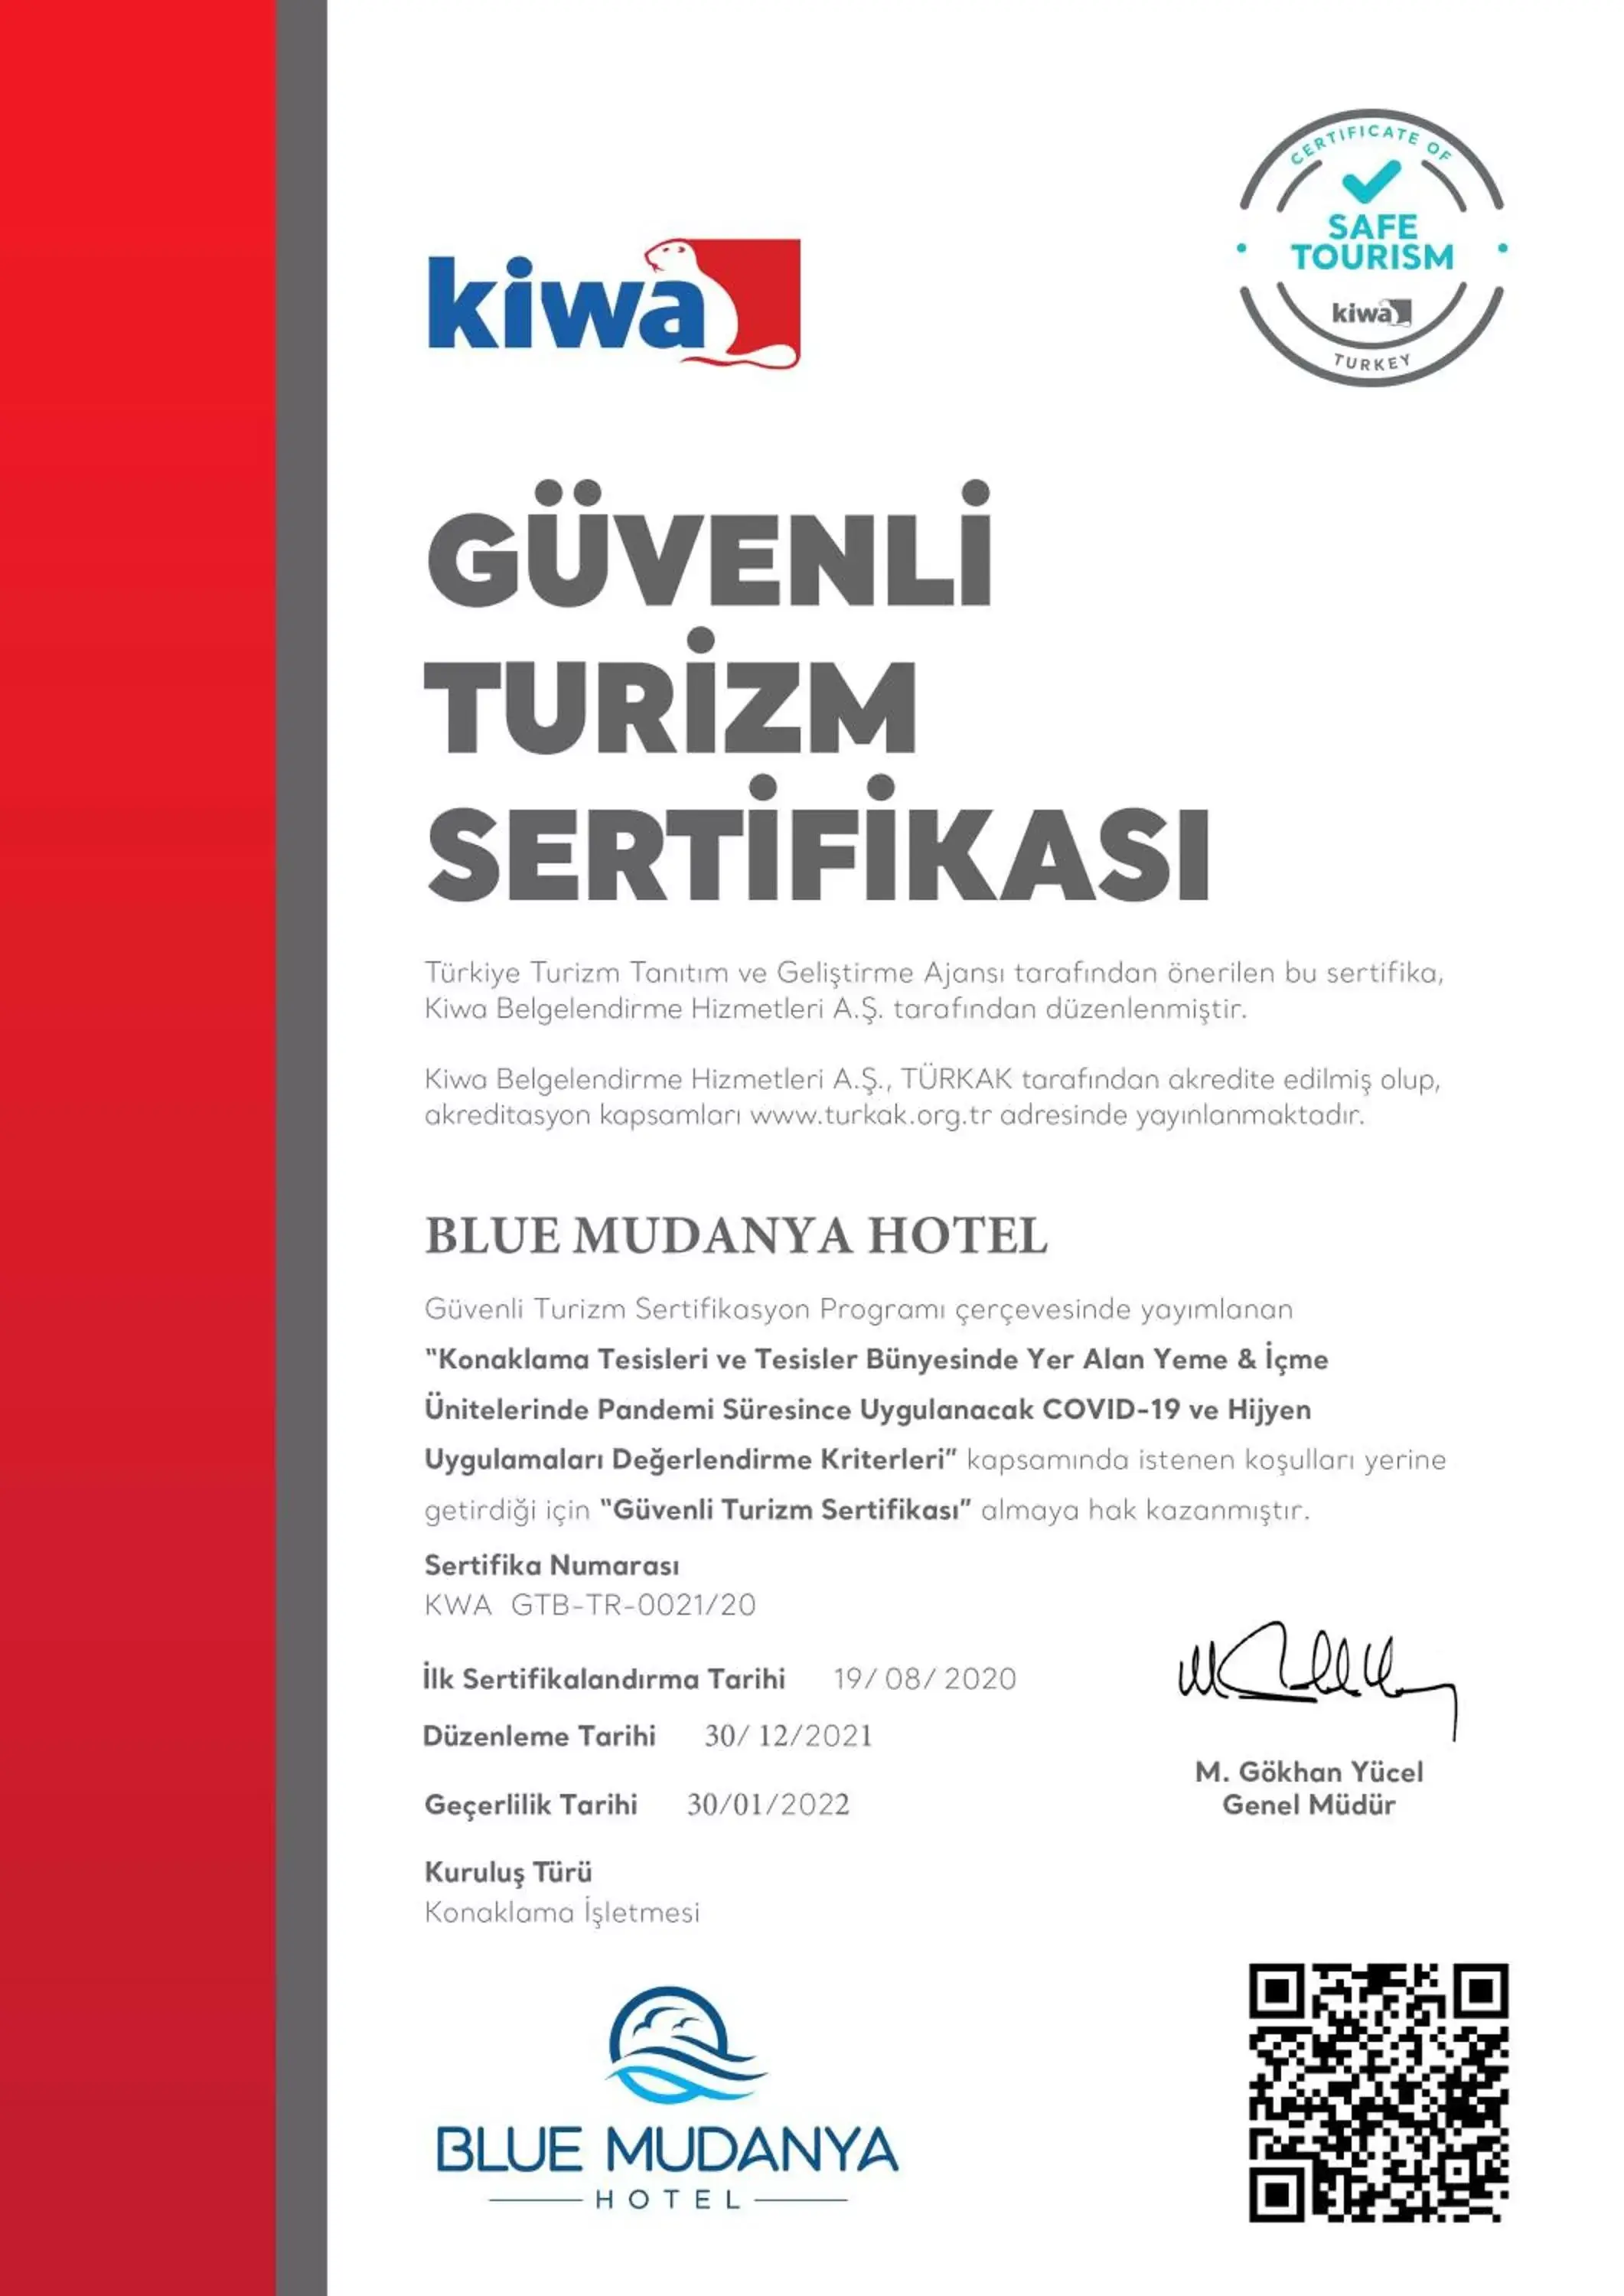 Logo/Certificate/Sign in BLUE MUDANYA HOTEL